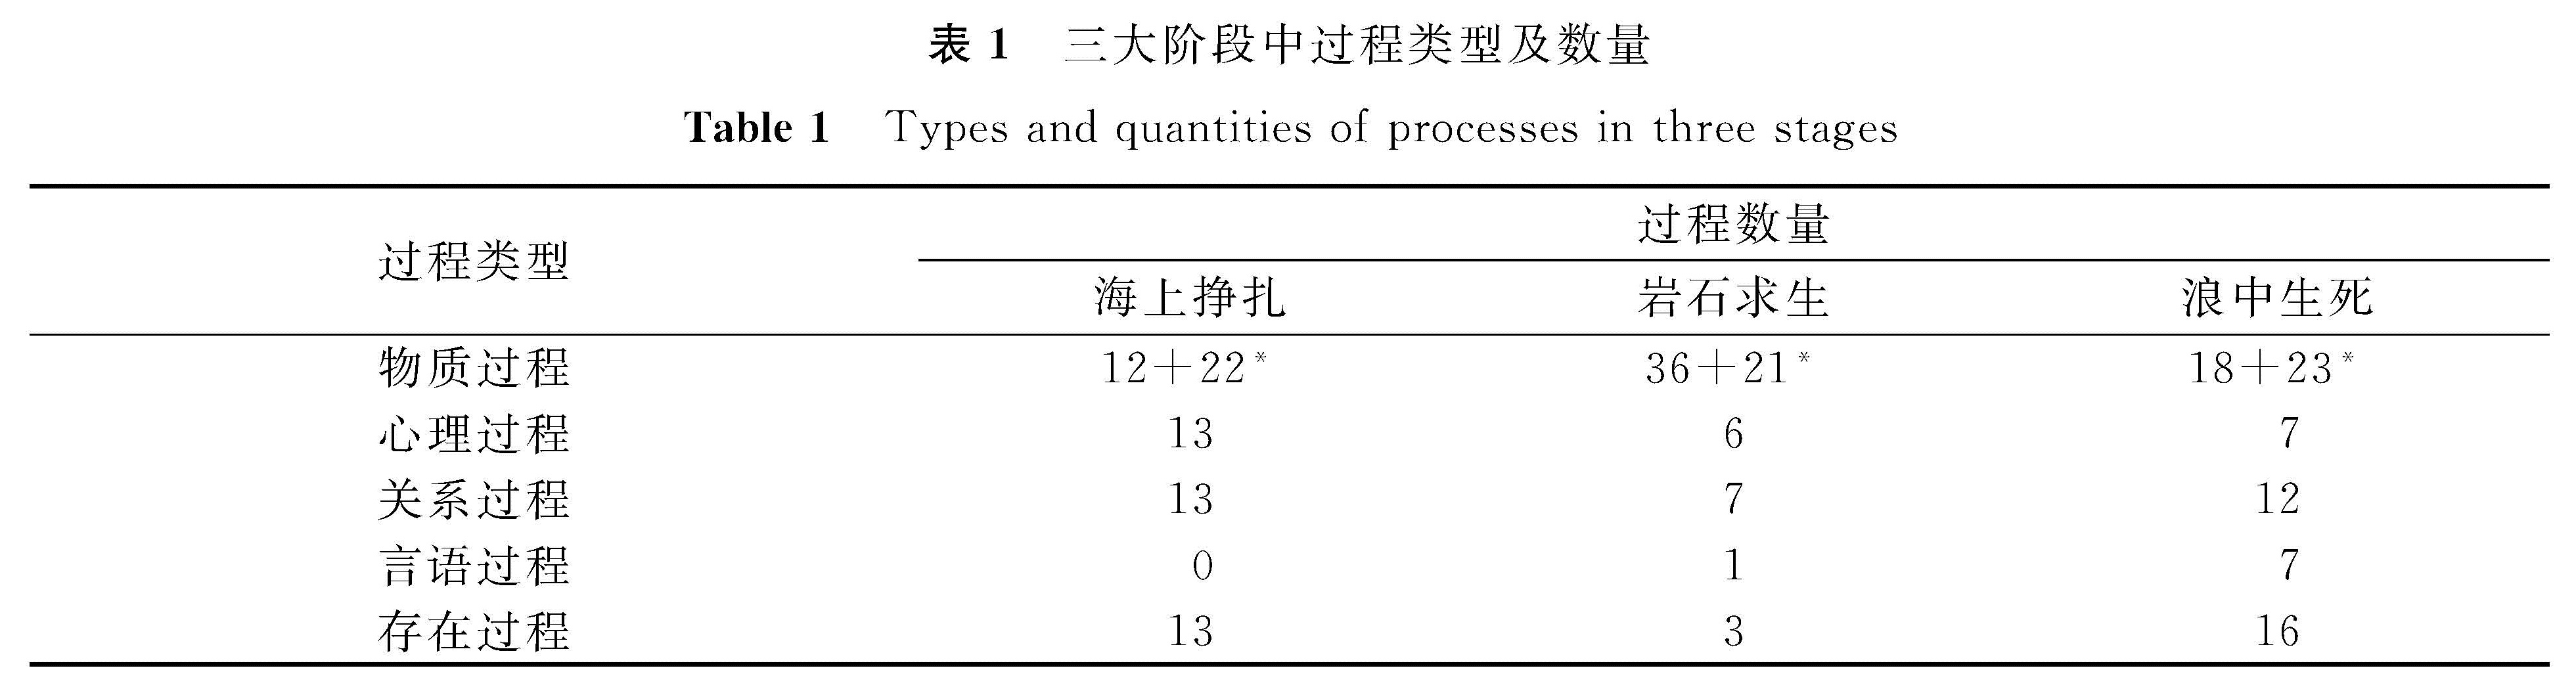 表1 三大阶段中过程类型及数量<br/>Table 1 Types and quantities of processes in three stages